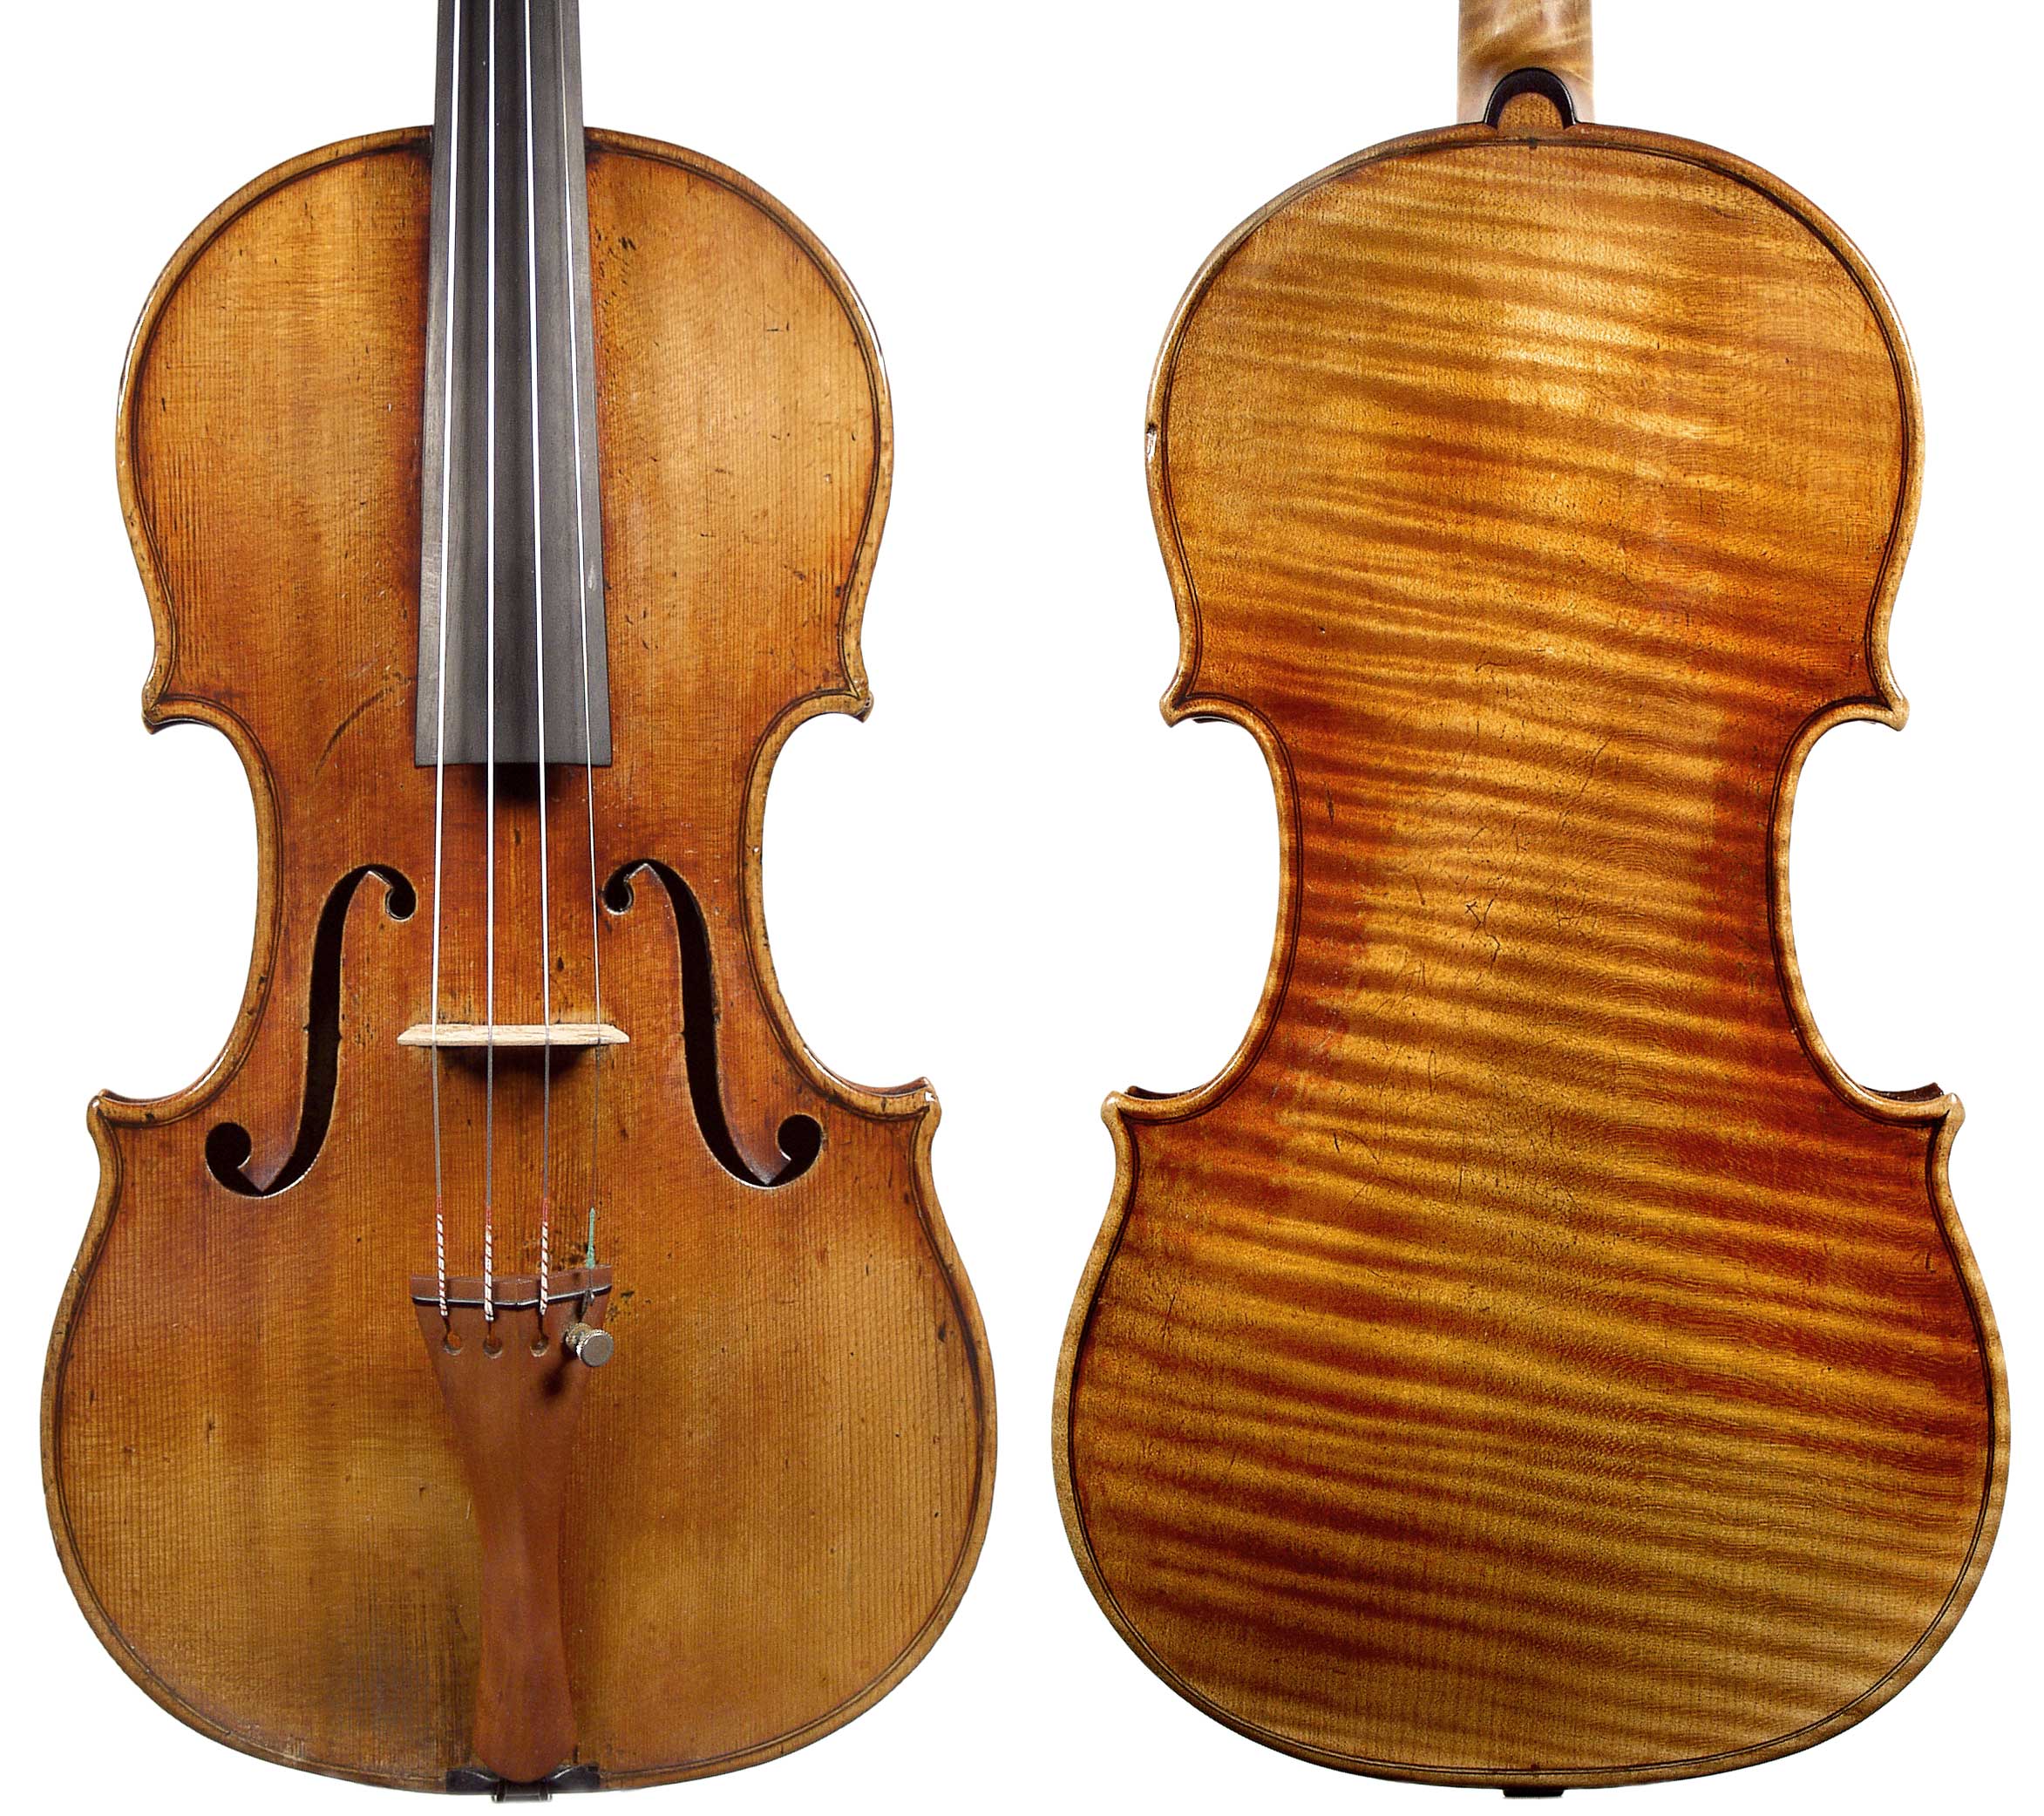 Antonio Stradivari 1710 ex-Vieuxtemps violin